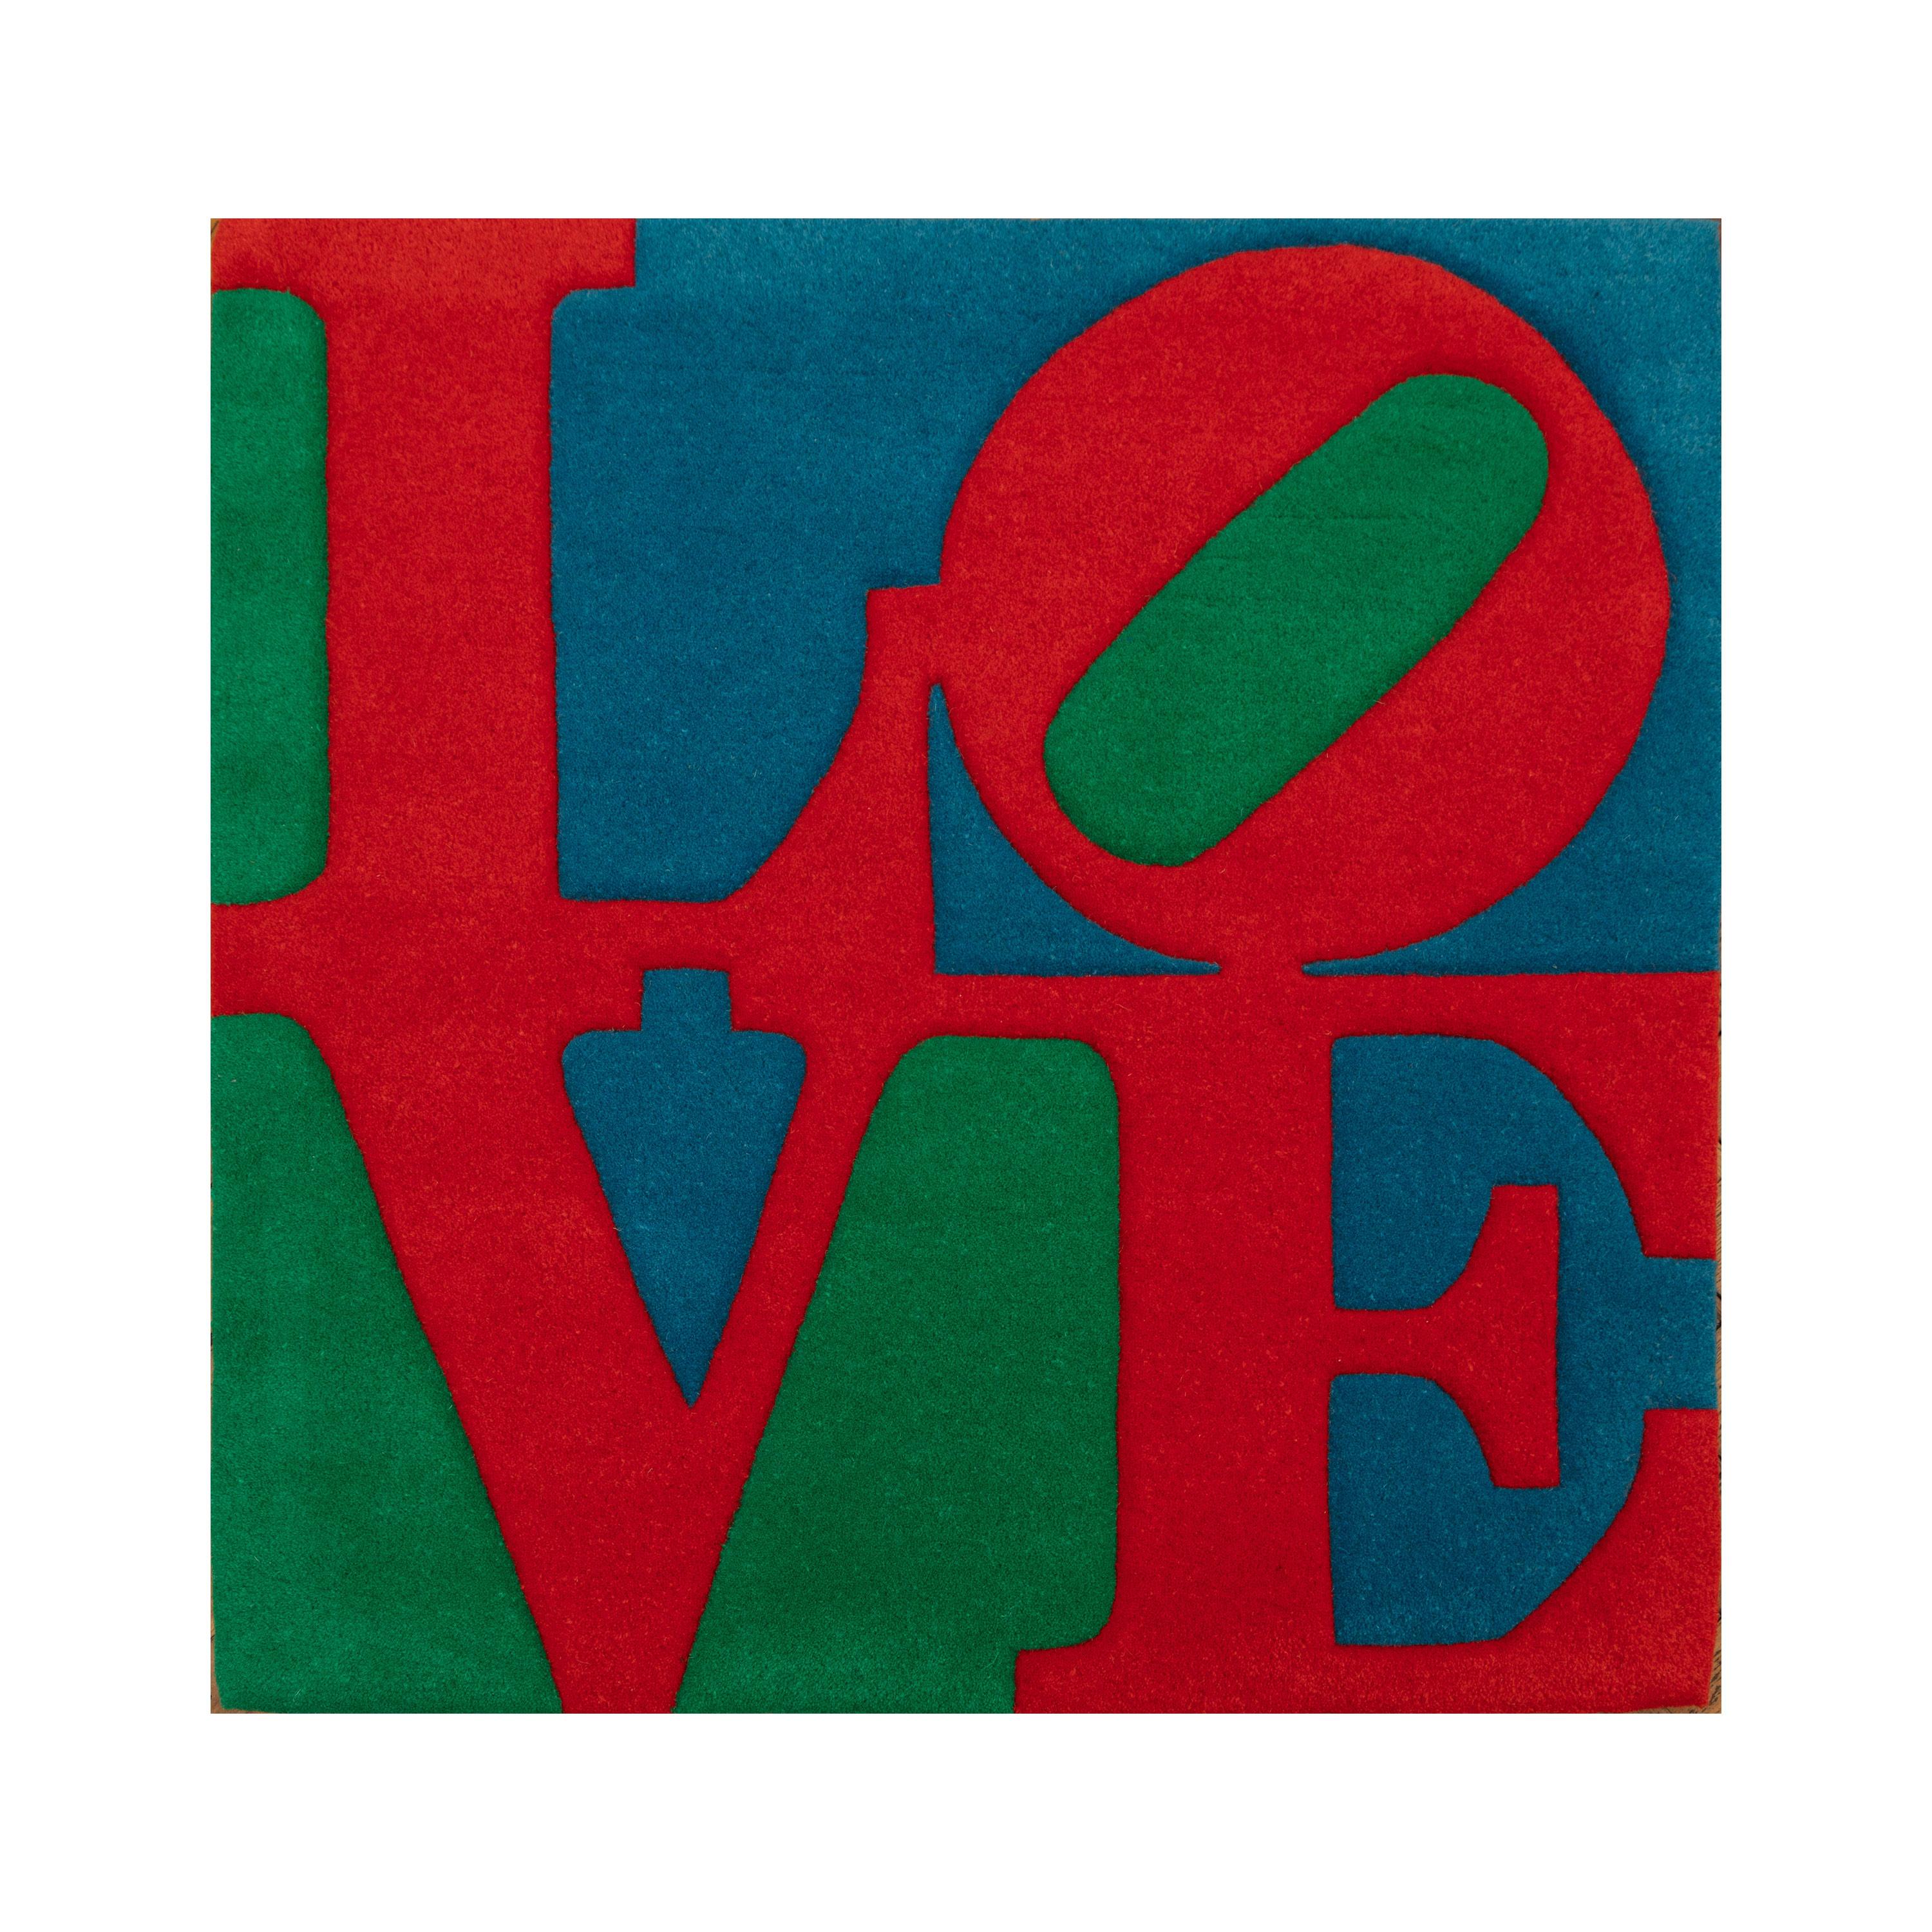 Classic LOVE, Indiana, Rot, Blau, Grün, Teppich, Installation – Art von Robert Indiana